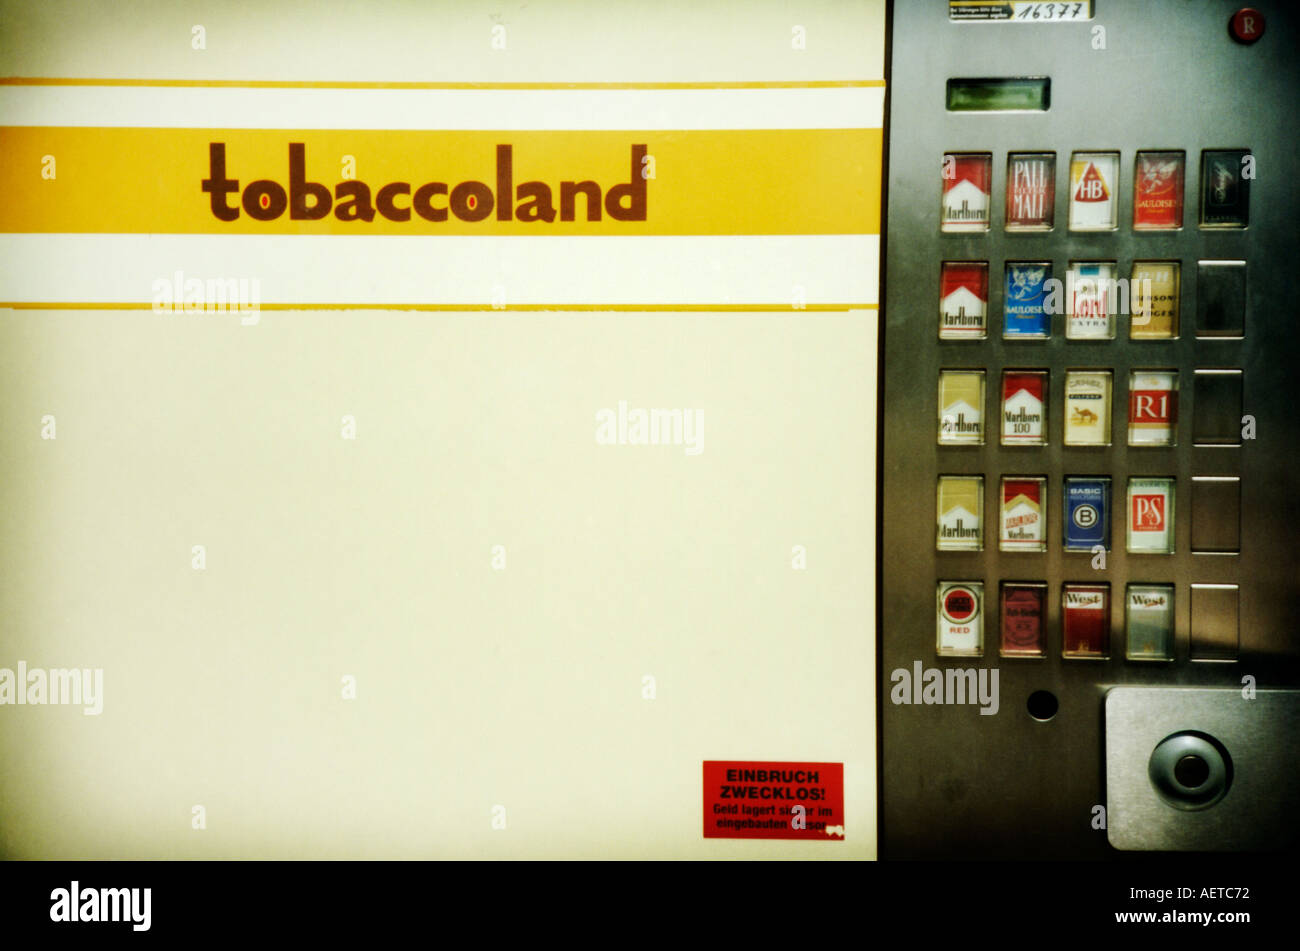 Tobaccoland Zigarettenautomat in Berlin Deutschland Europa - Bild auf einer Lomo-Kamera aufgenommen Stockfoto